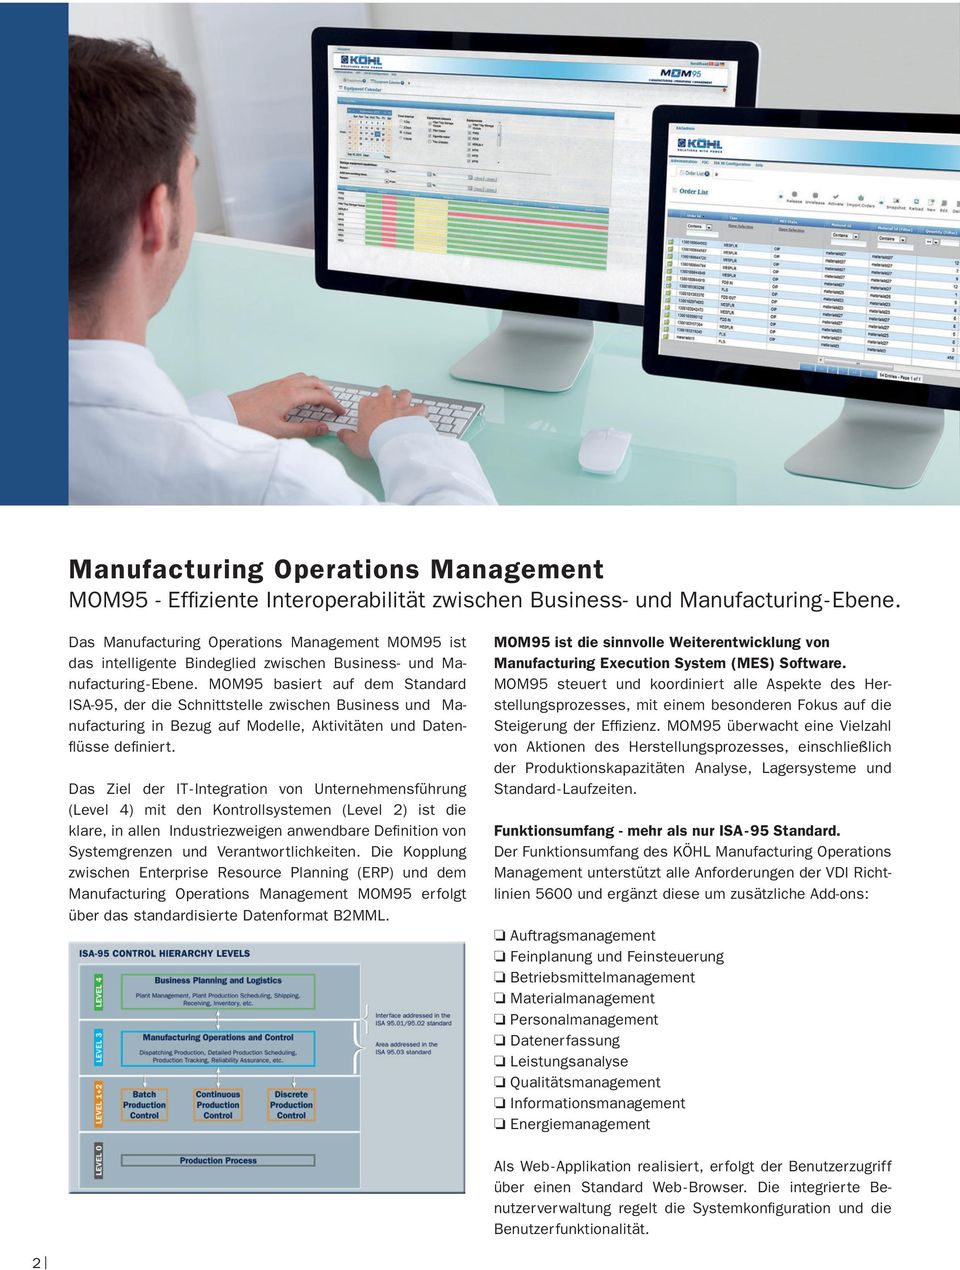 MOM95 basiert auf dem Standard ISA-95, der die Schnittstelle zwischen Business und Manufacturing in Bezug auf Modelle, Aktivitäten und Datenflüsse definiert.